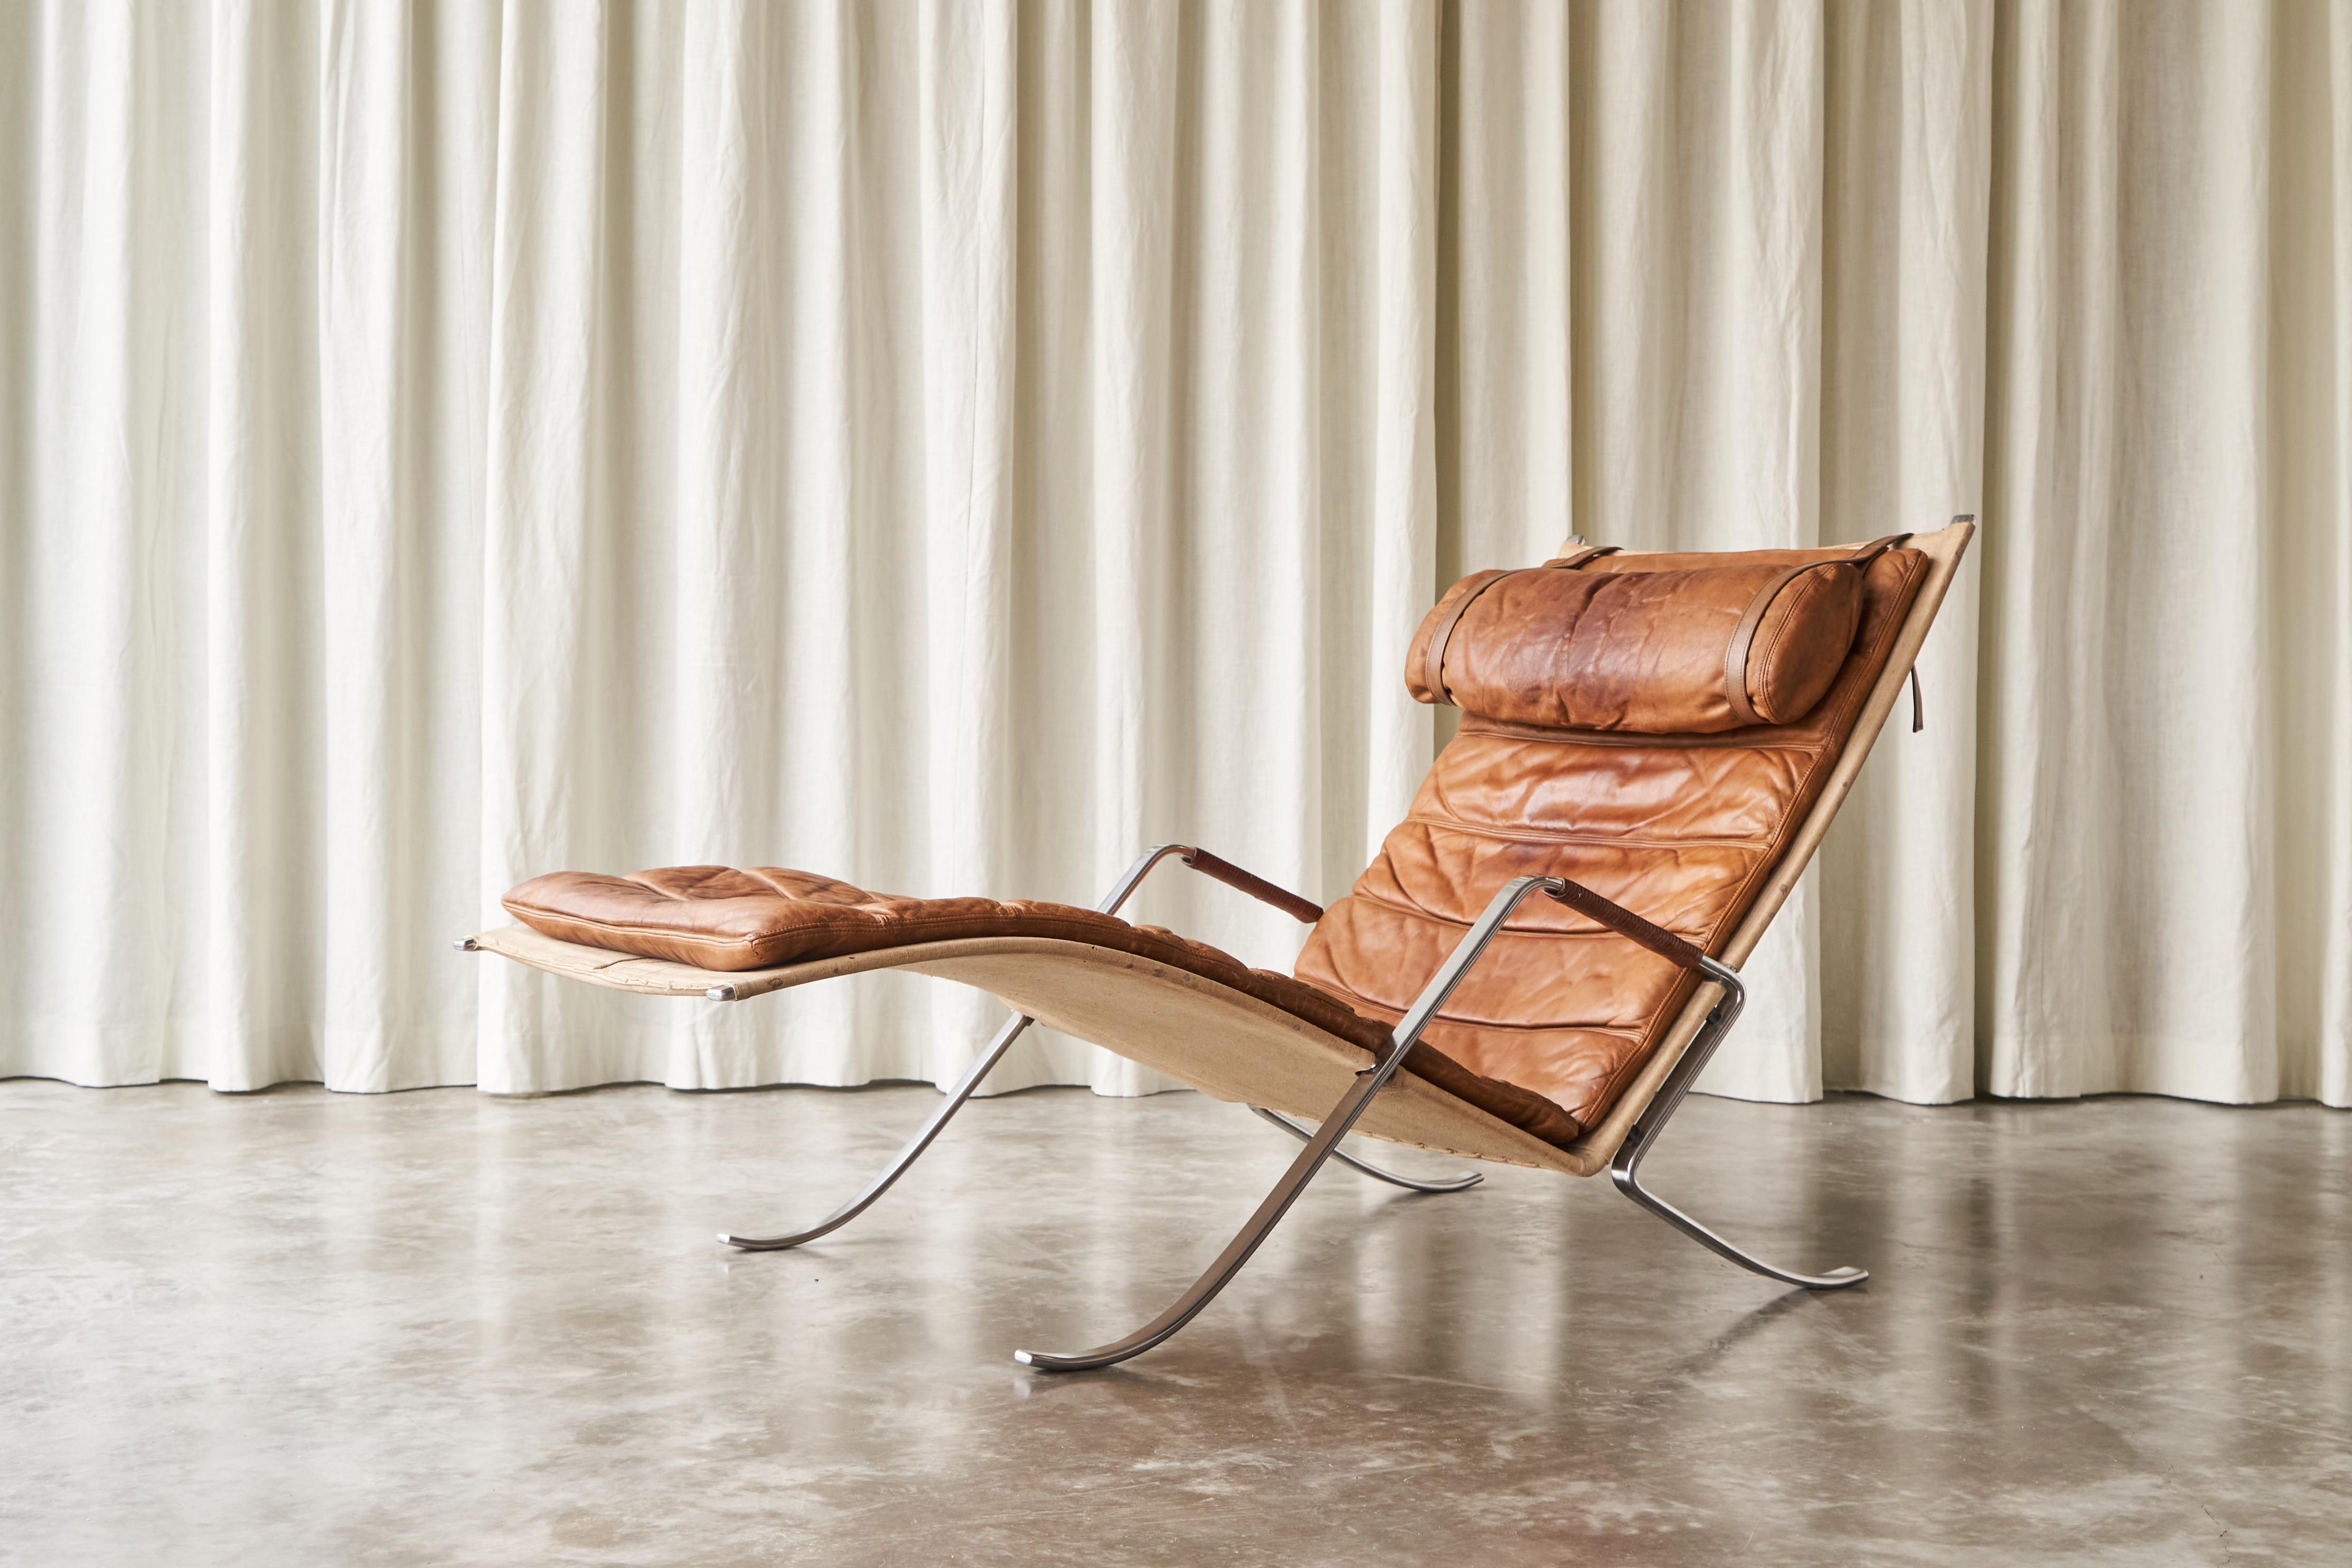 Fabricius & Kastholm FK87 en cuir cognac patiné, production Alfred Kill, années 1960.

Cette chaise longue très rare, modèle 